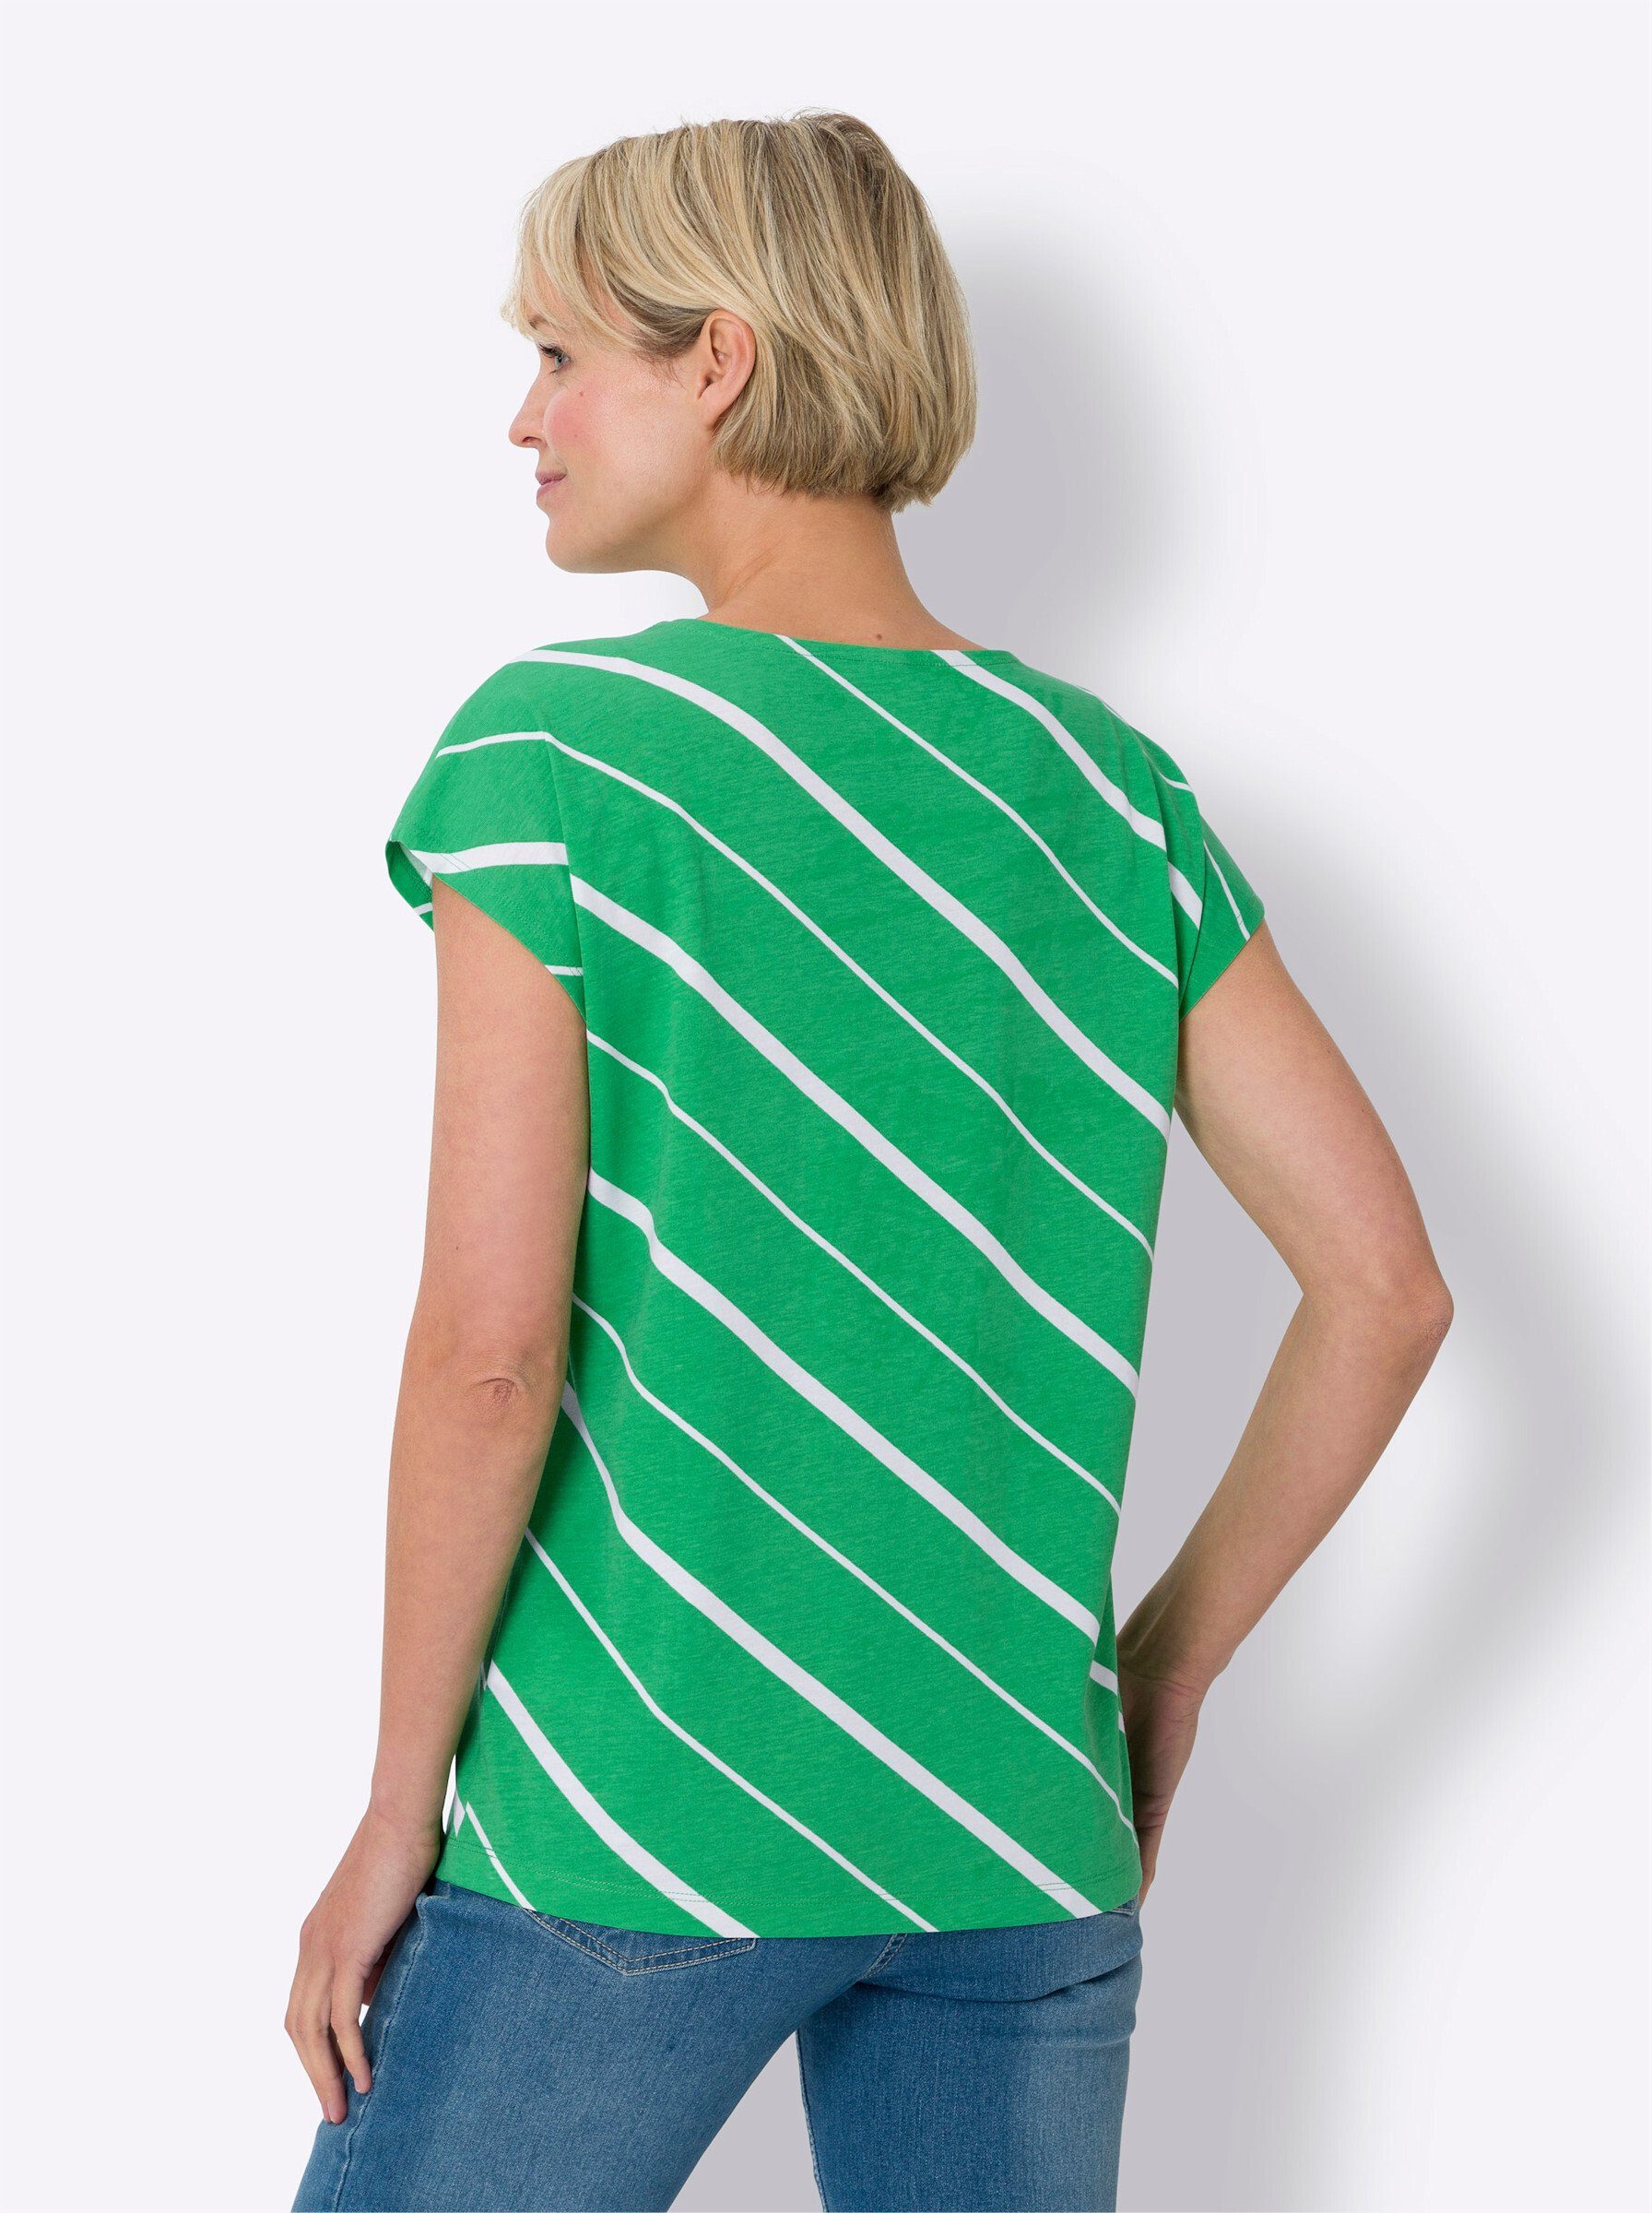 grasgrün-weiß-gestreift an! Sieh T-Shirt